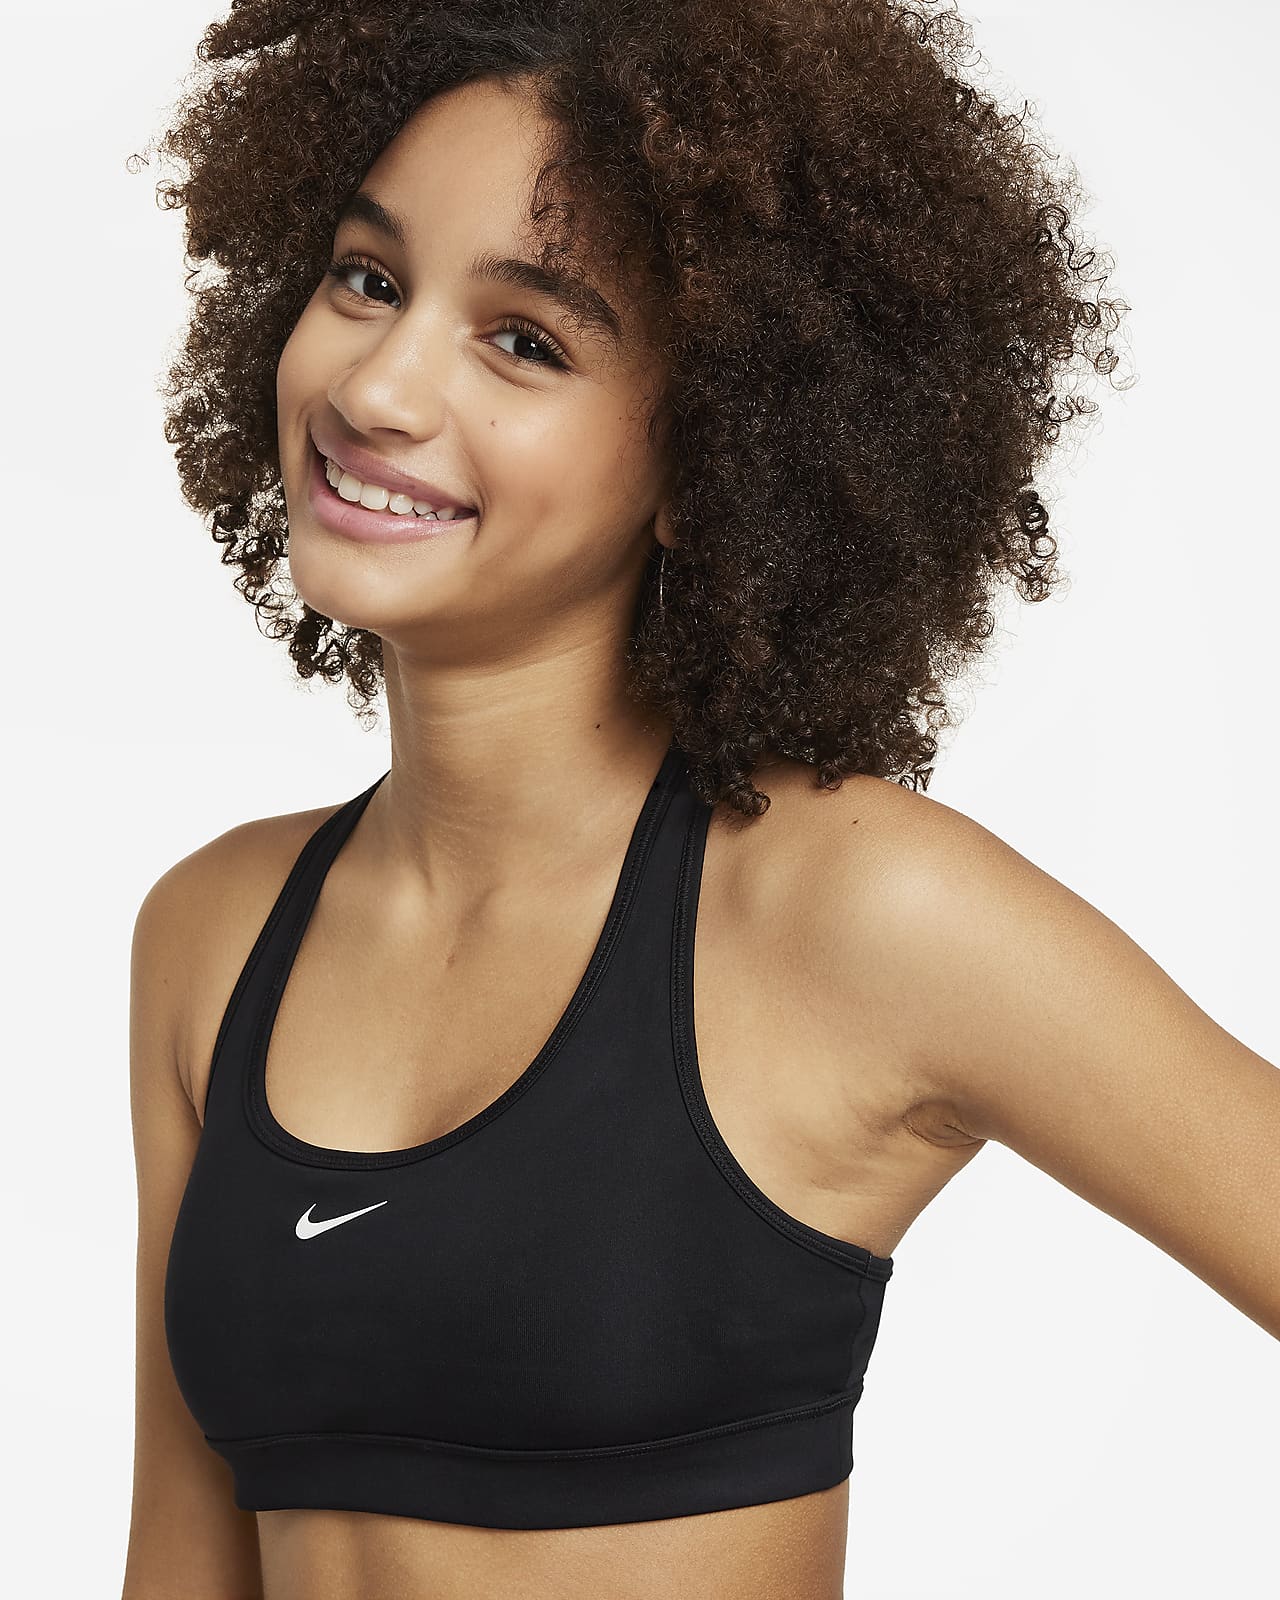 Girls' Sports Bras. Nike IE